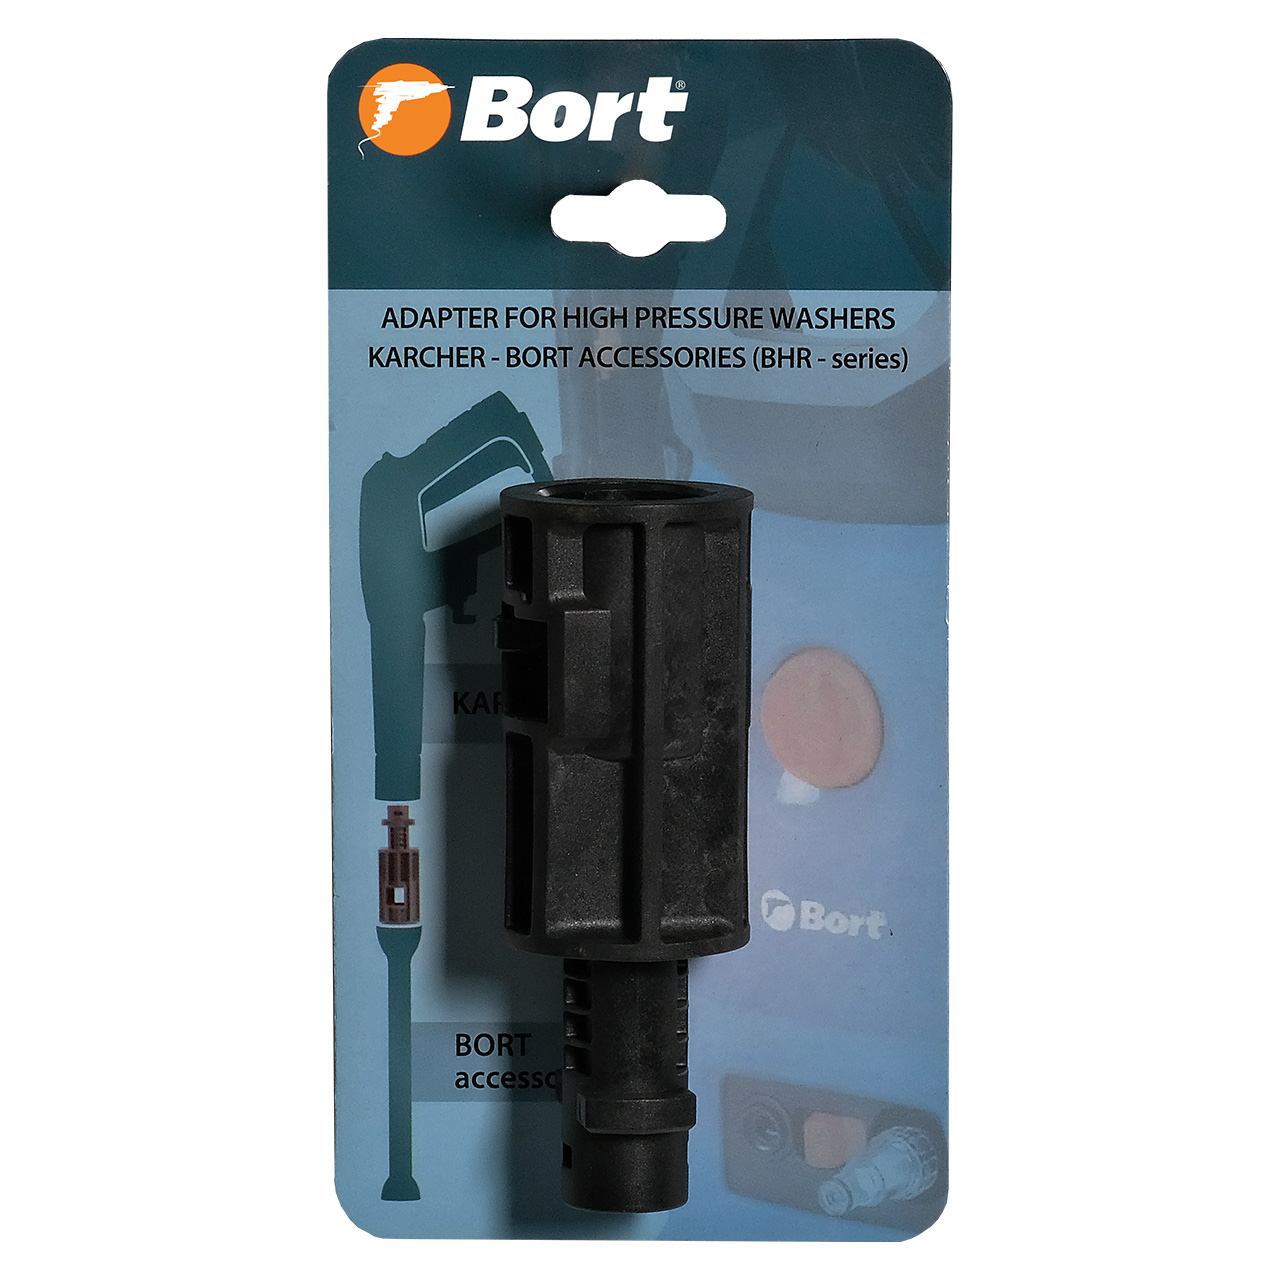 Переходник BORT Adapter Karcher-Bort